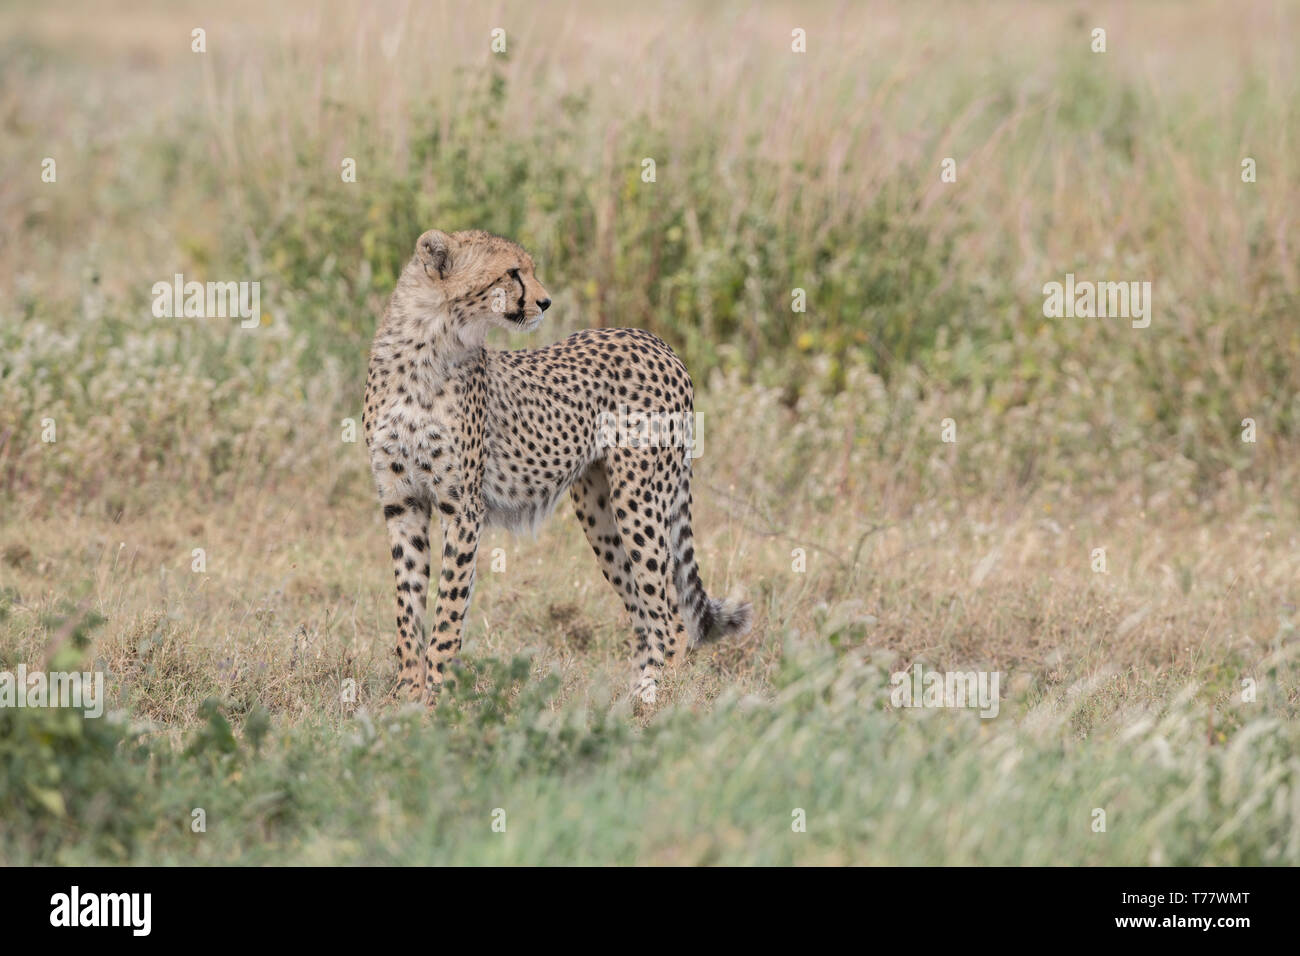 Yearling cheetah standing, Tanzania Stock Photo